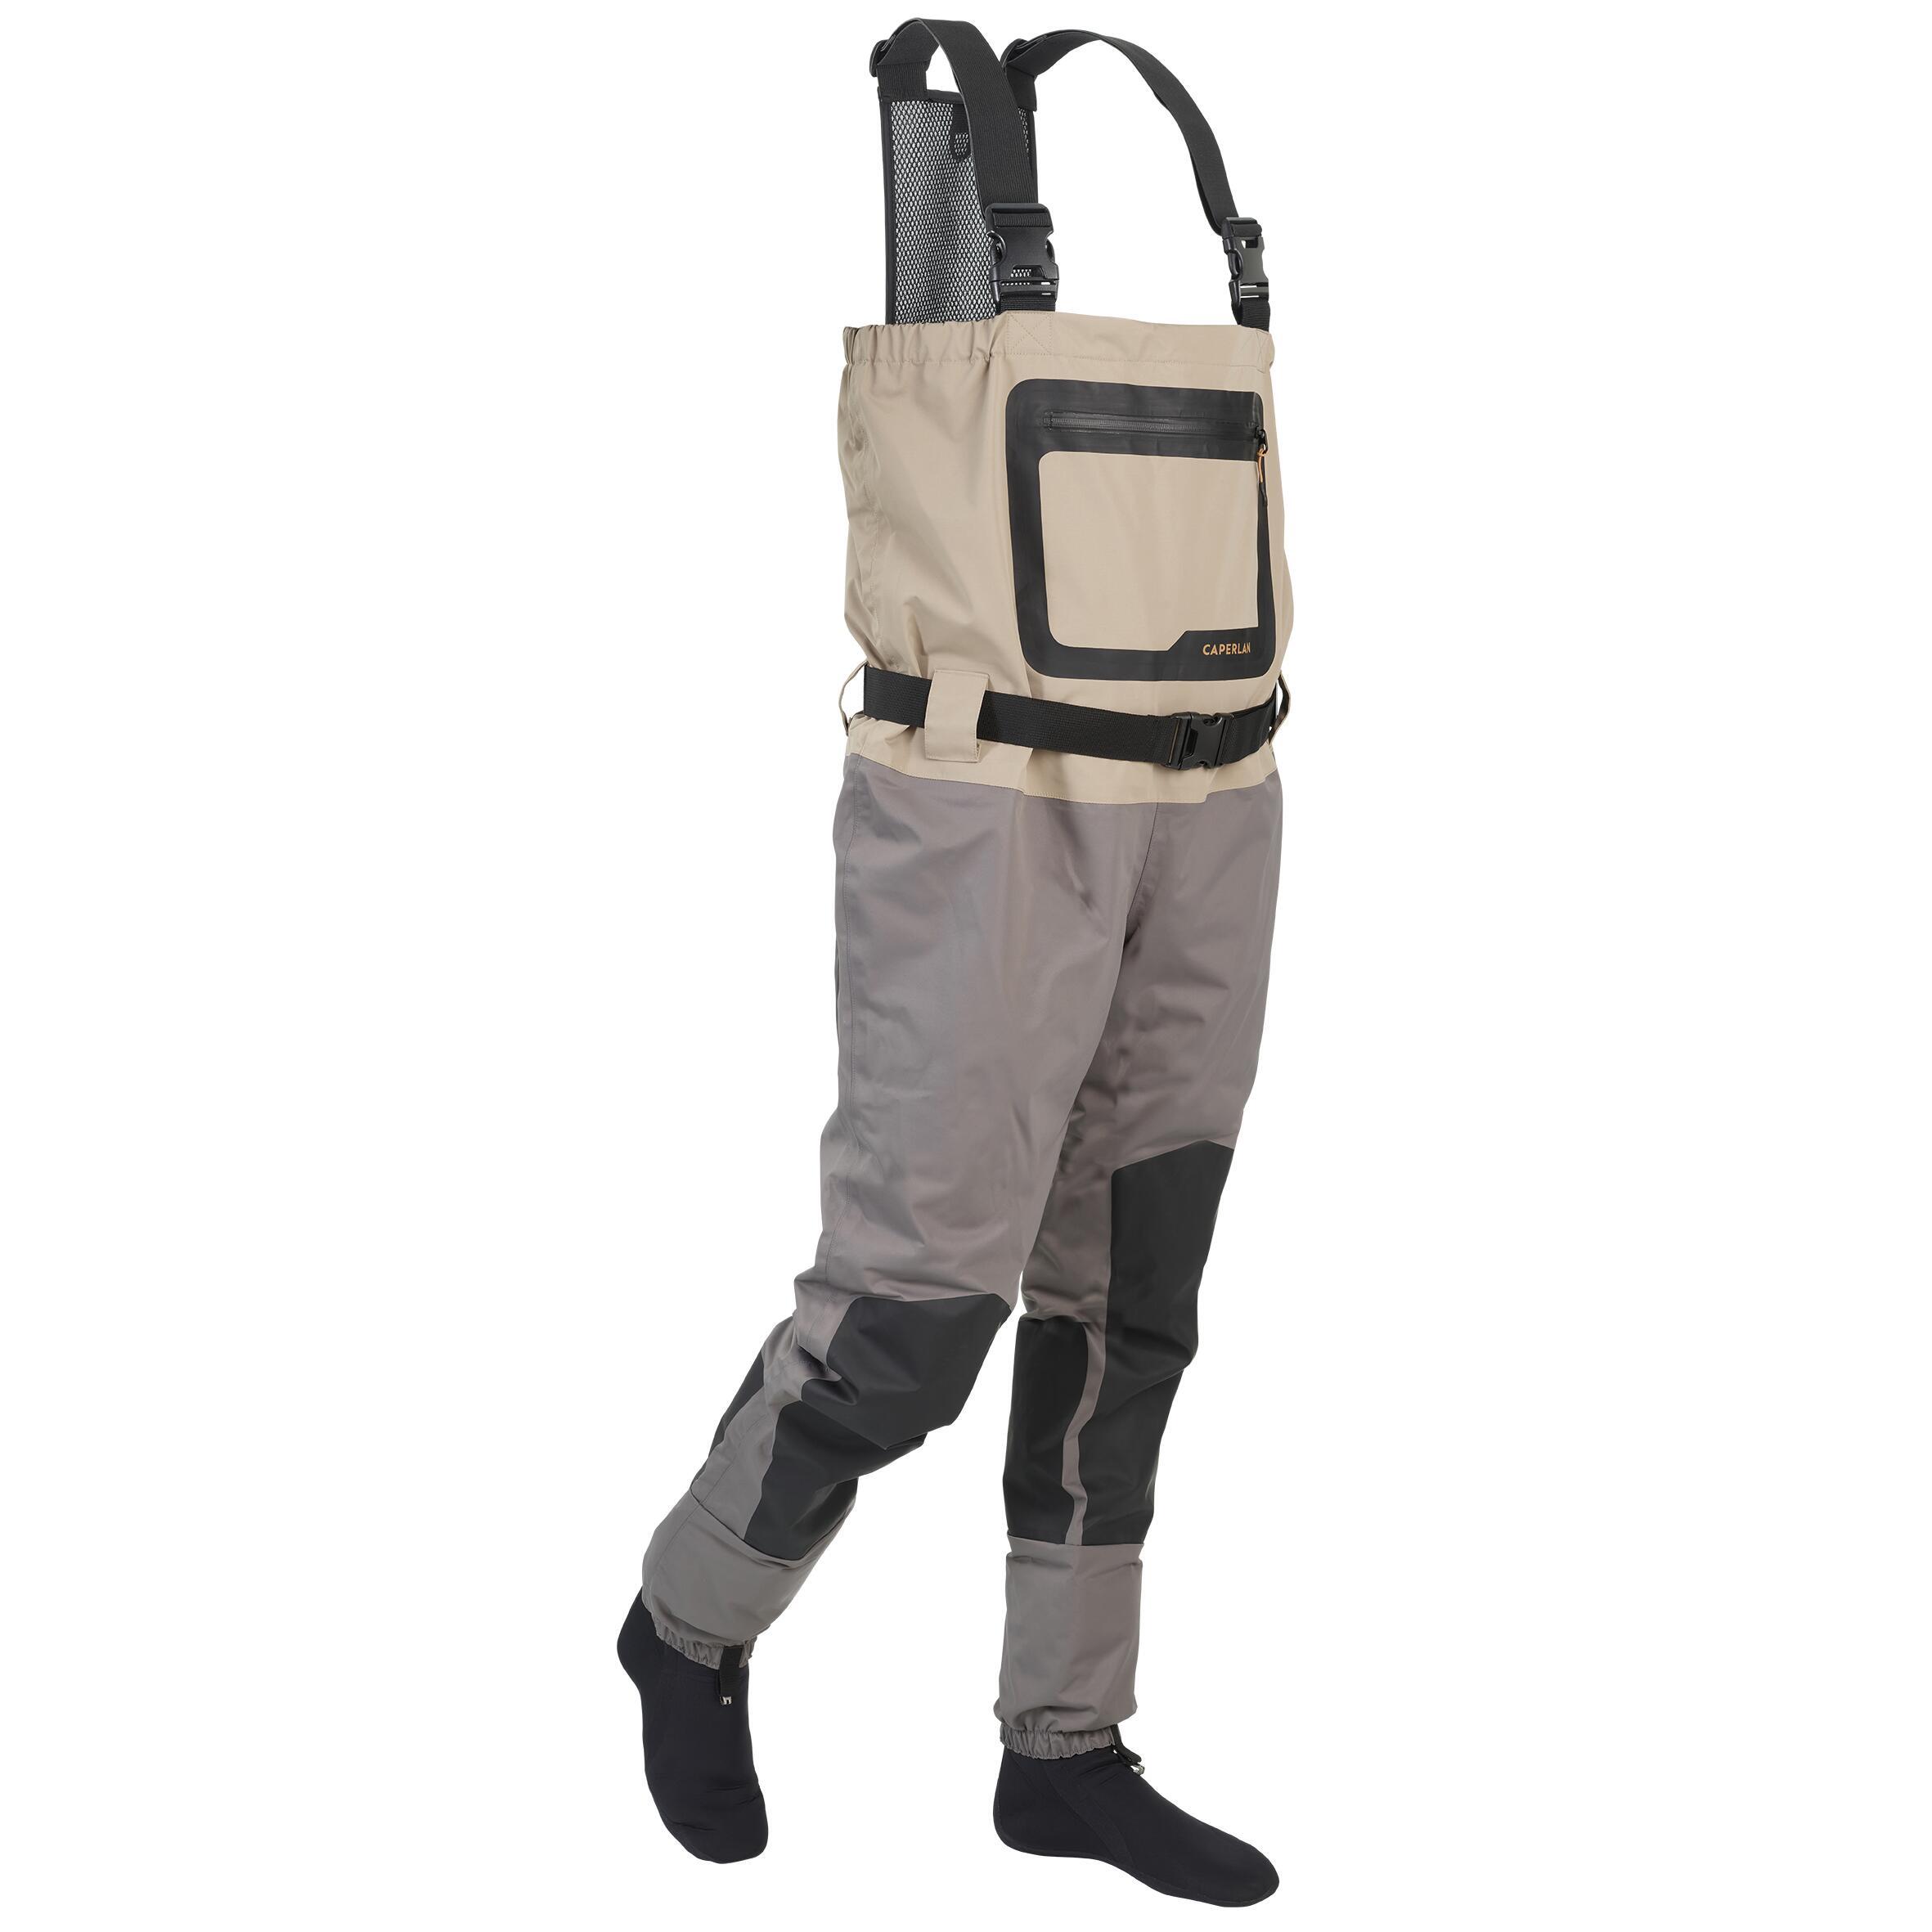 Waders 500 дышащие с неопреновыми носками CAPERLAN, бежевый/светло-серый